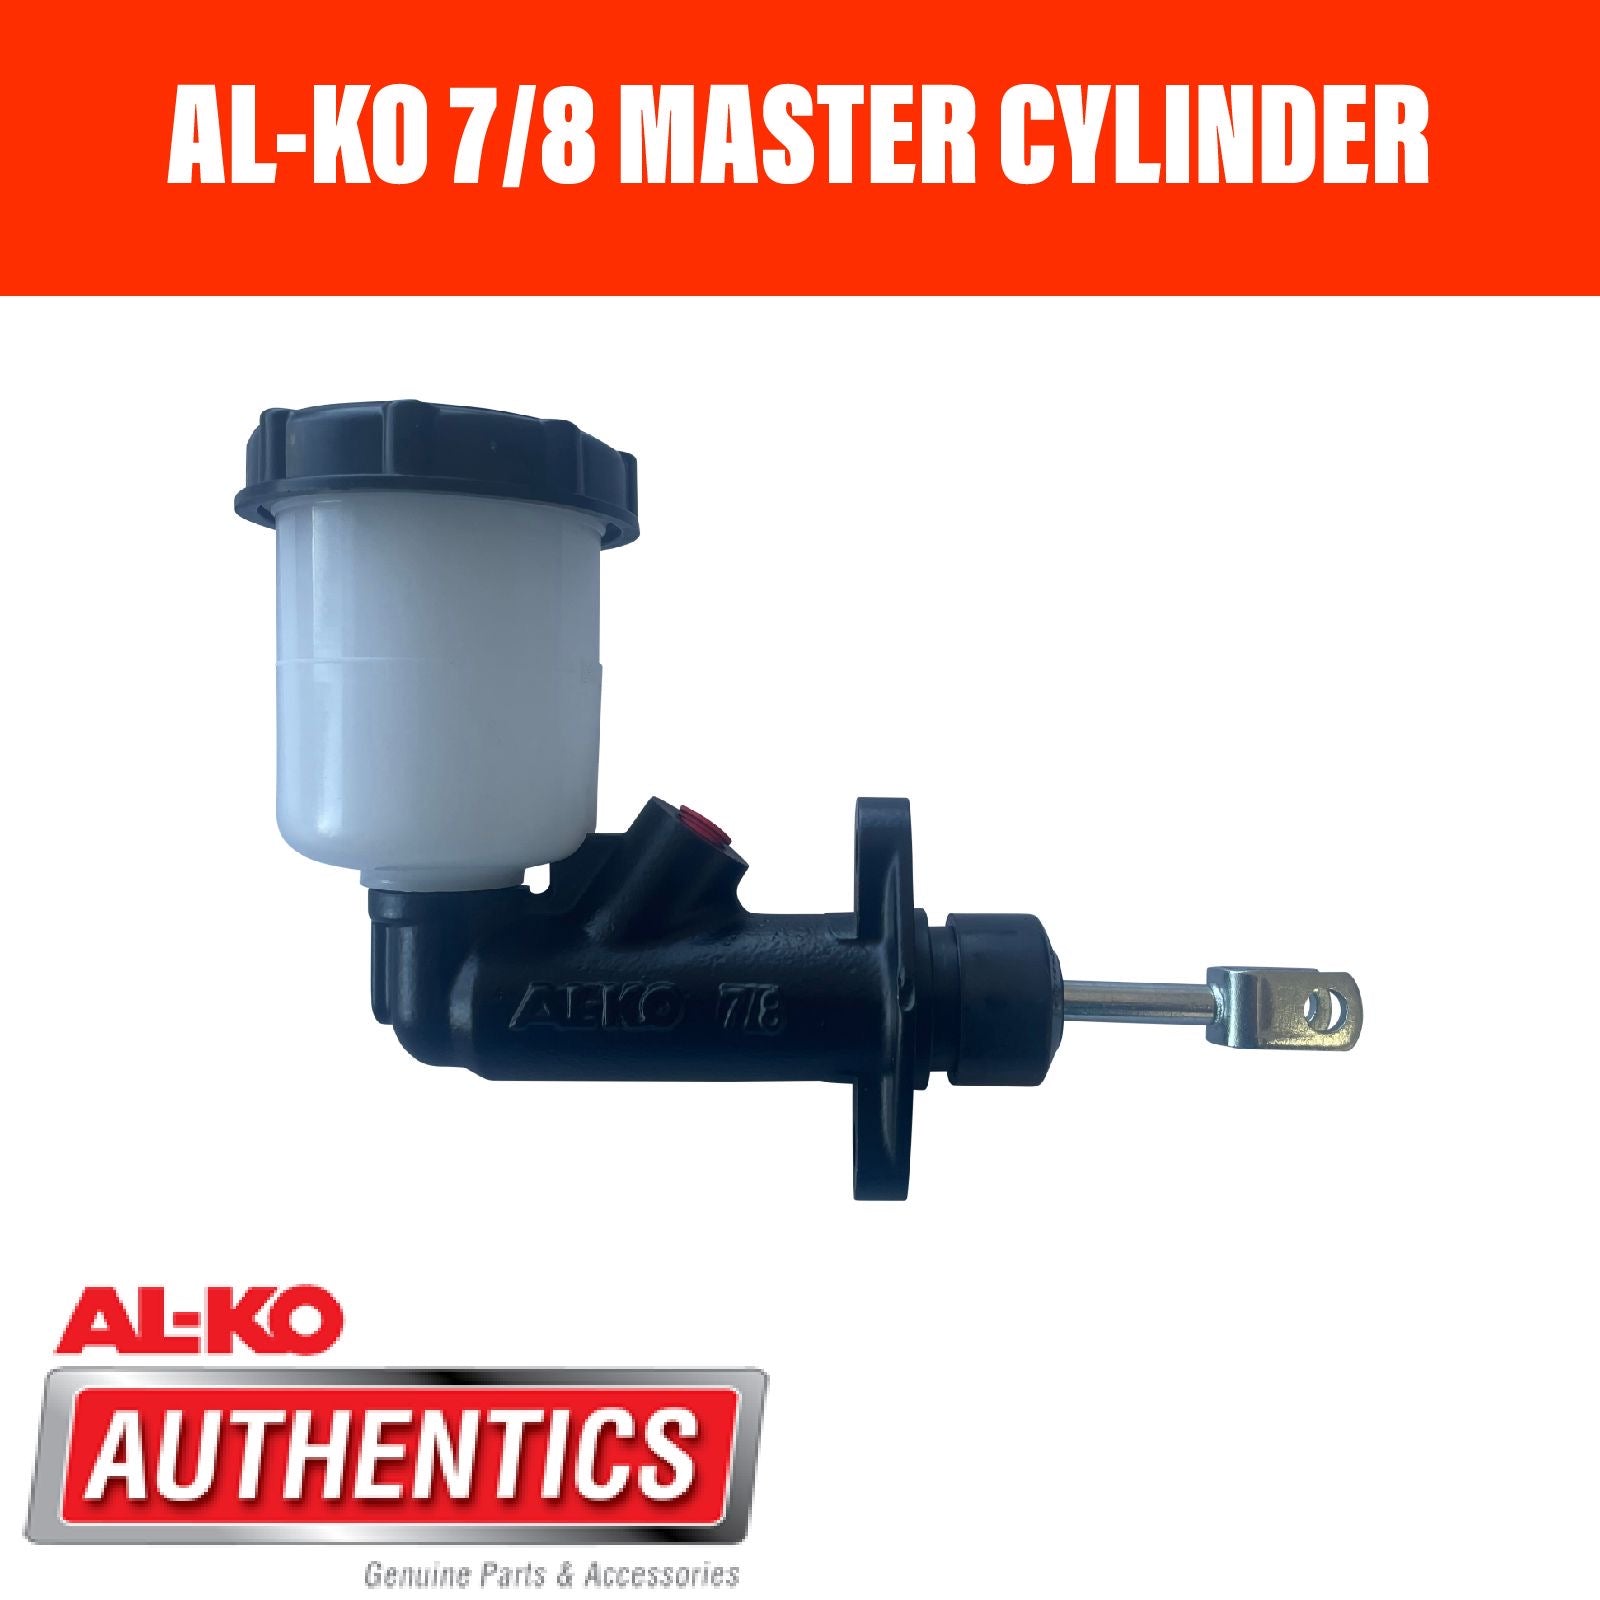 AL-KO 7/8 Master Cylinder